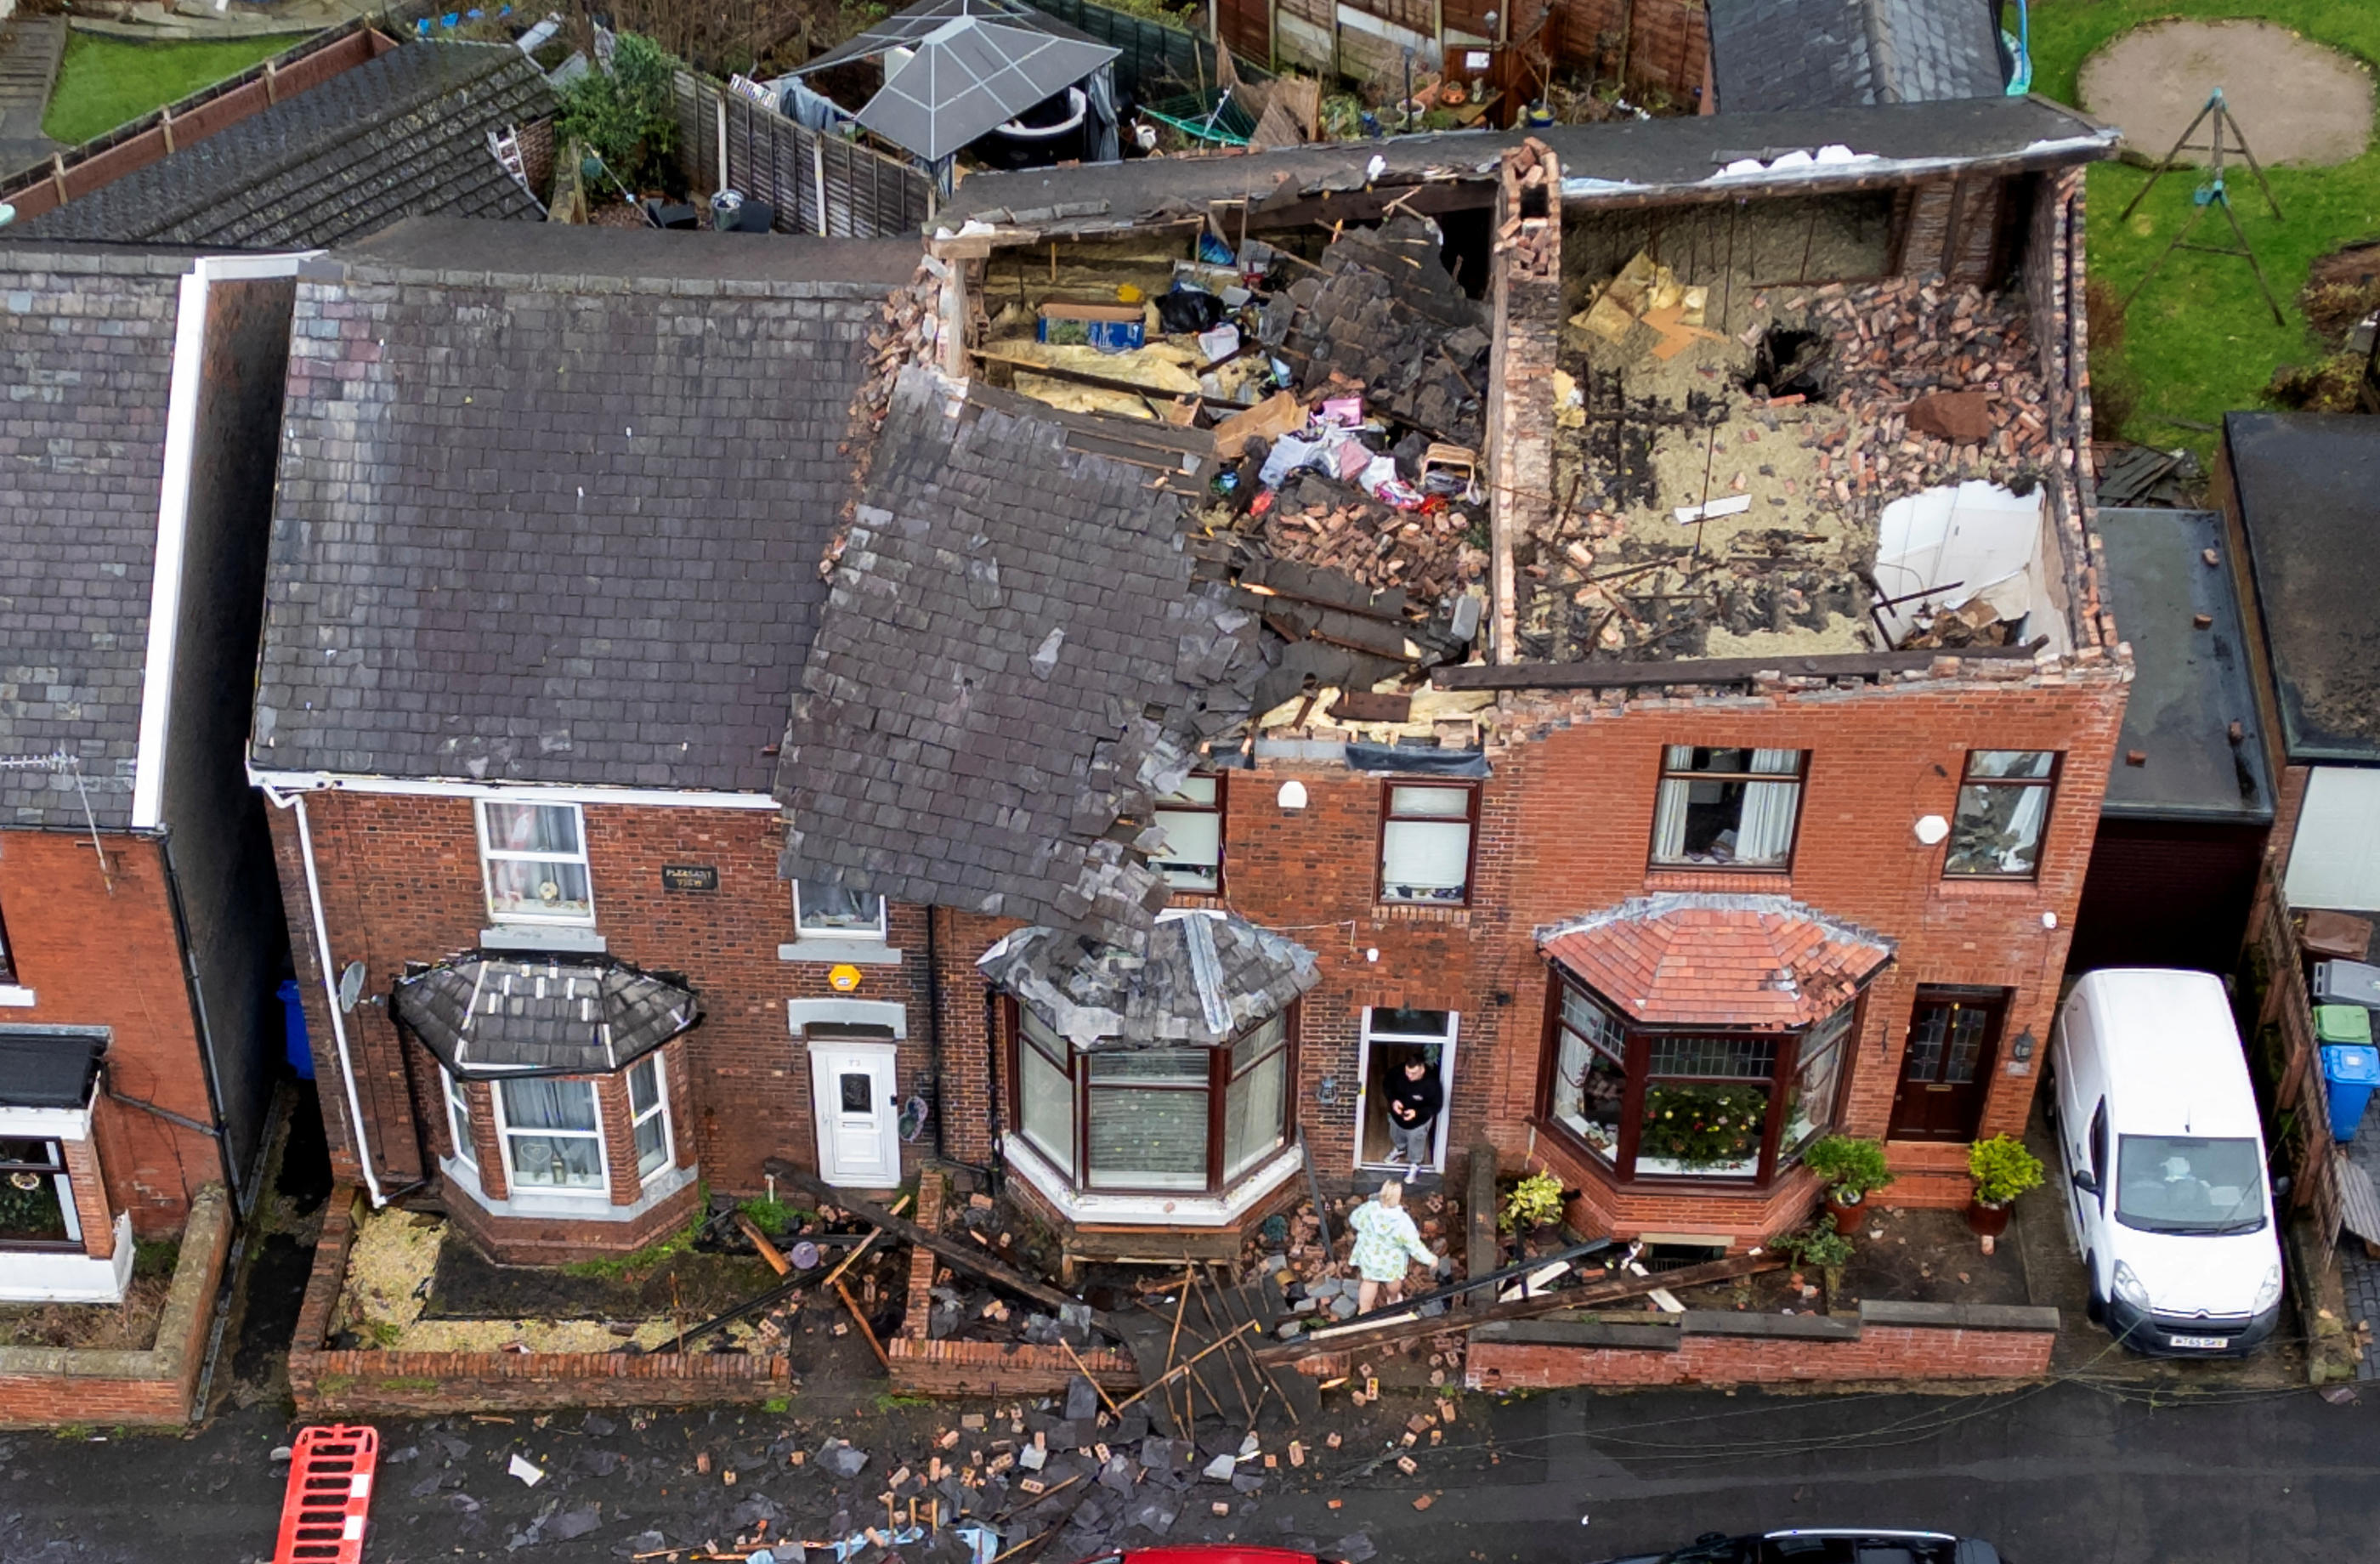 Le passage de la tempête Gerrit mercredi soir a fait de nombreux dégâts au Royaume-Uni, comme ici à Stalybridge, au nord-ouest de l'Angleterre. REUTERS/Phil Noble